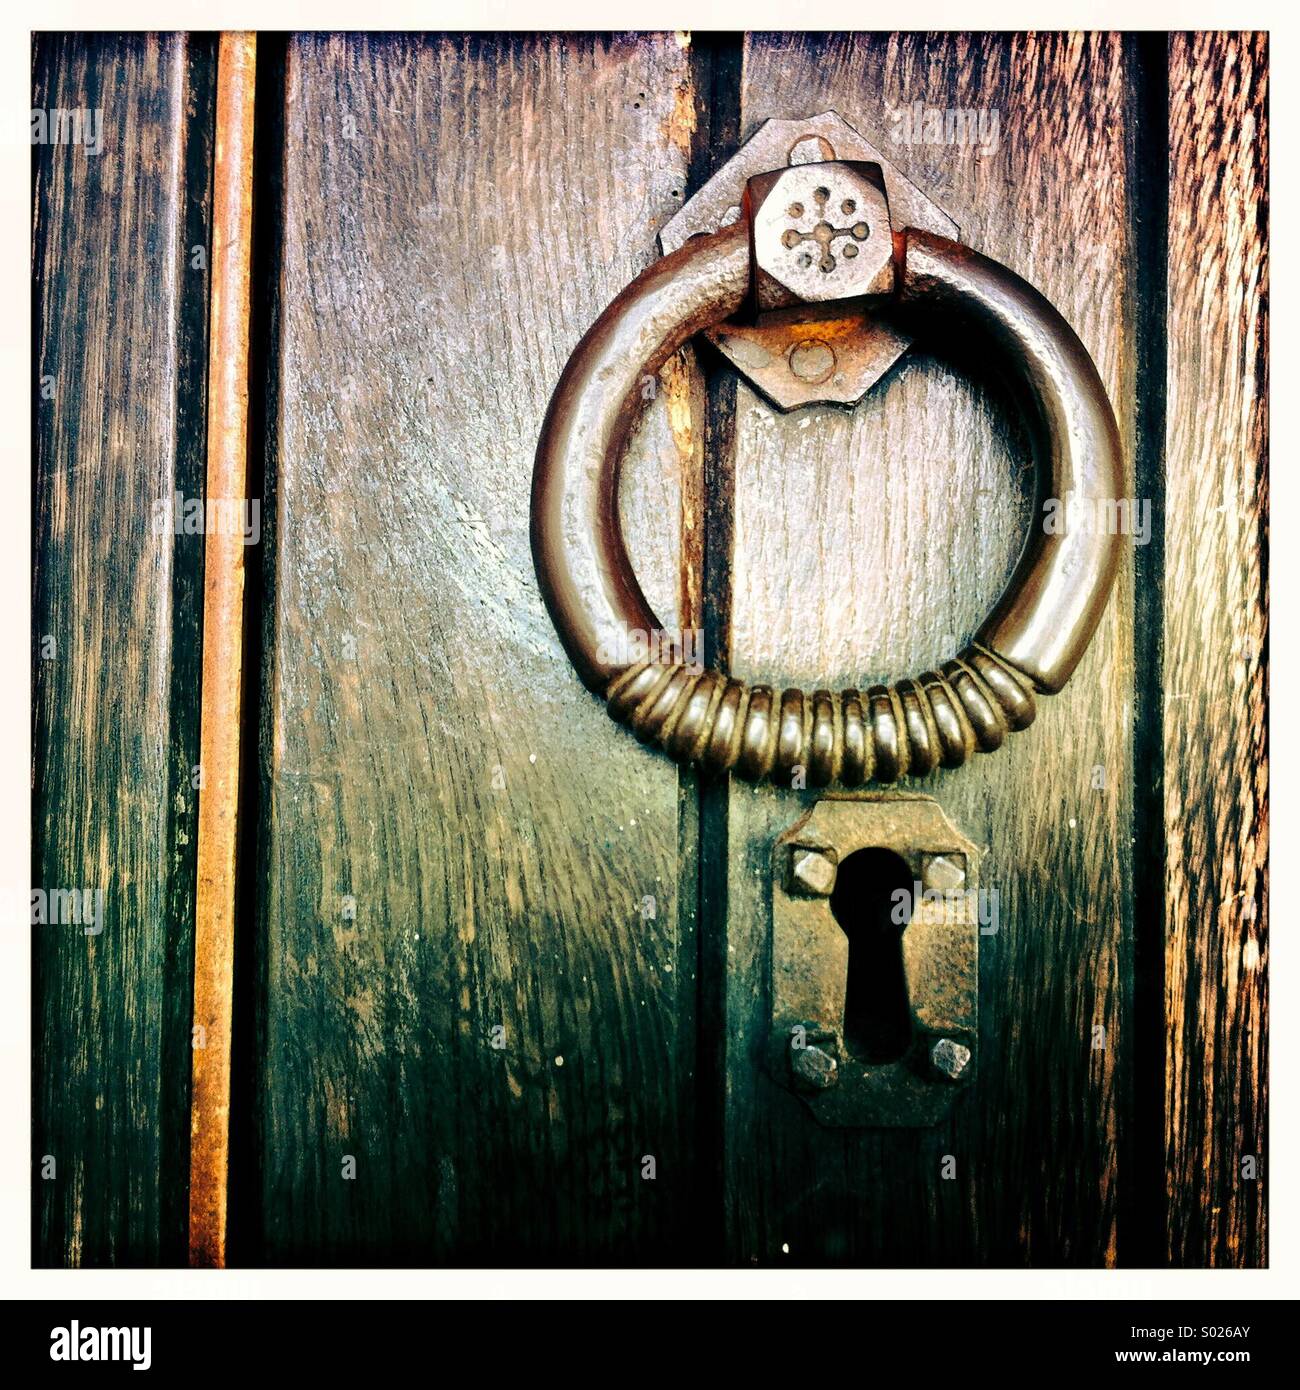 Door knocker on church door Stock Photo